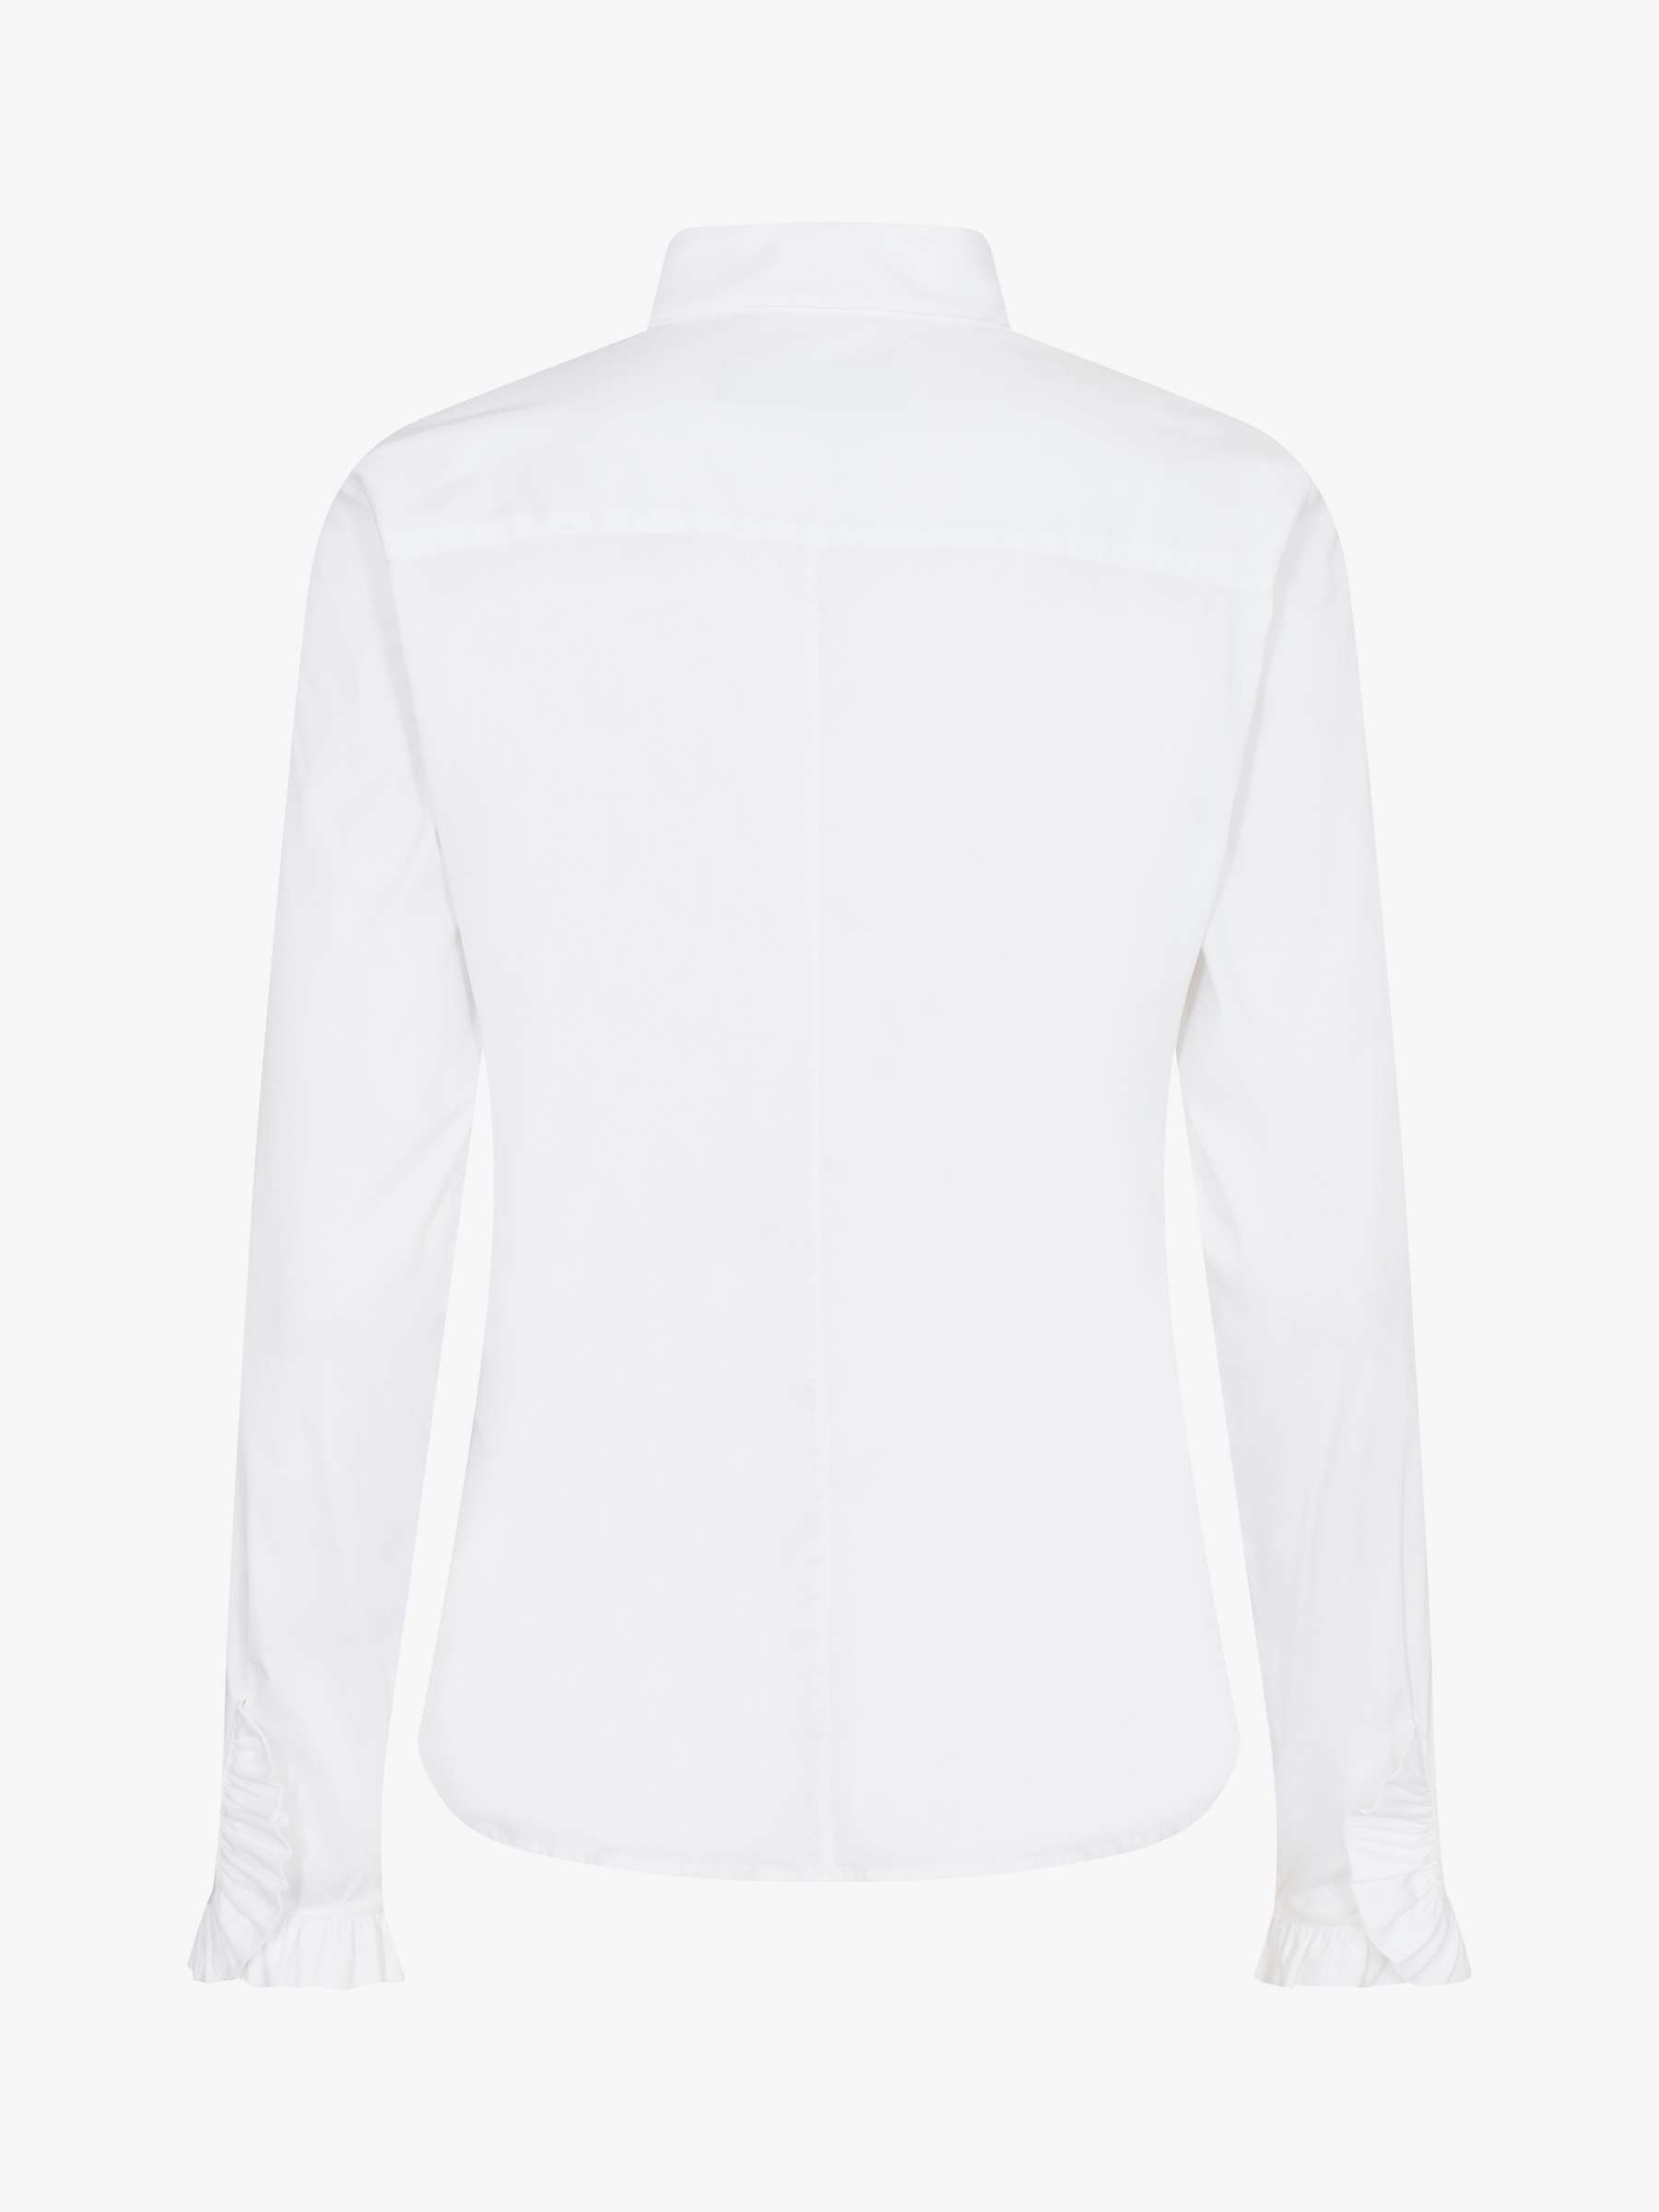 Buy MOS MOSH Mattie Flip Shirt, White Online at johnlewis.com